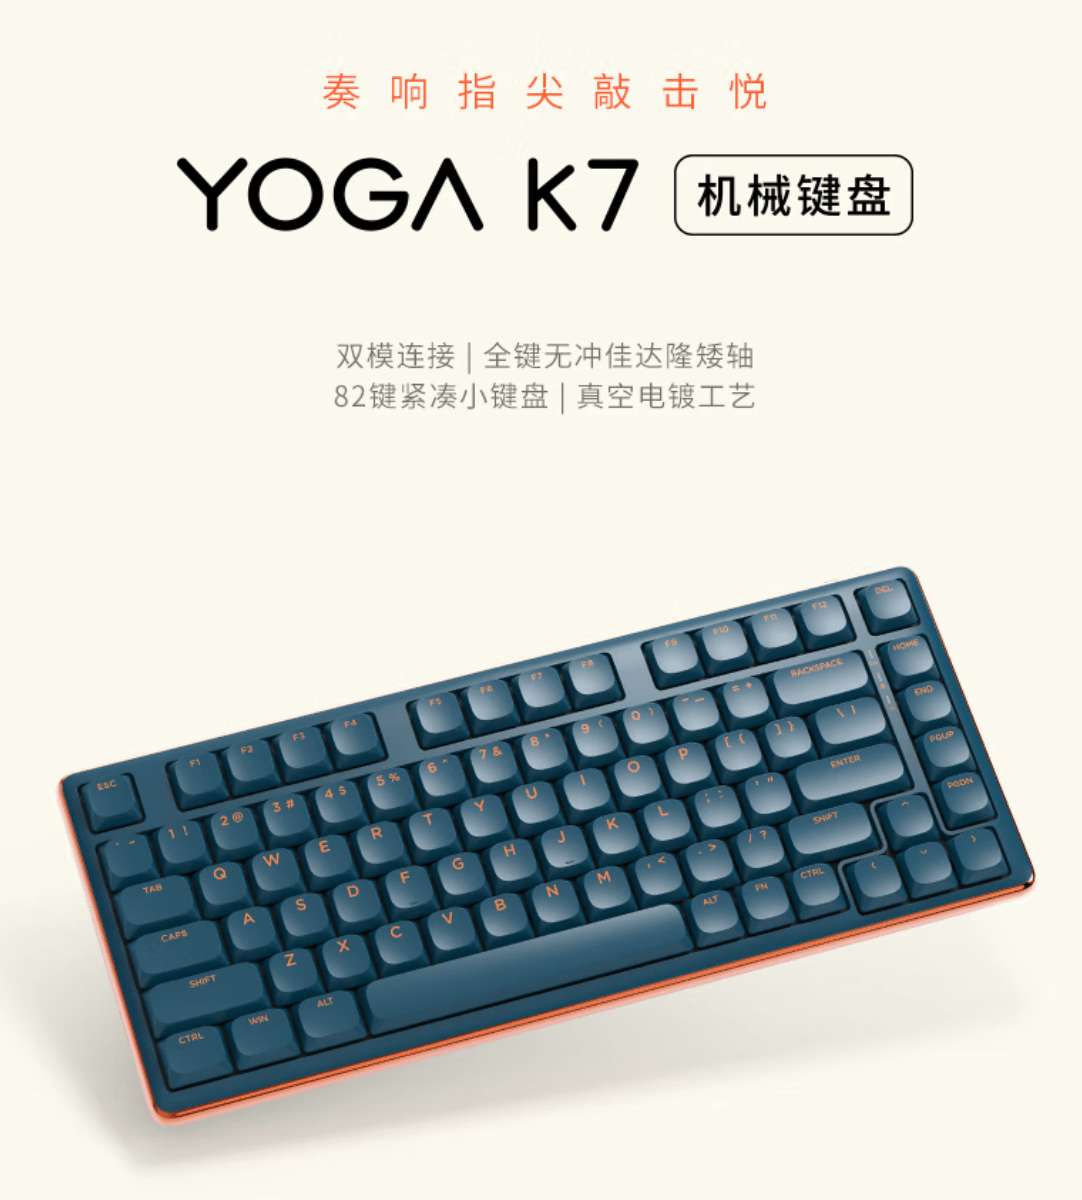 联想YOGA K7机械键盘什么时候发布 联想YOGA K7 机械键盘发布时间